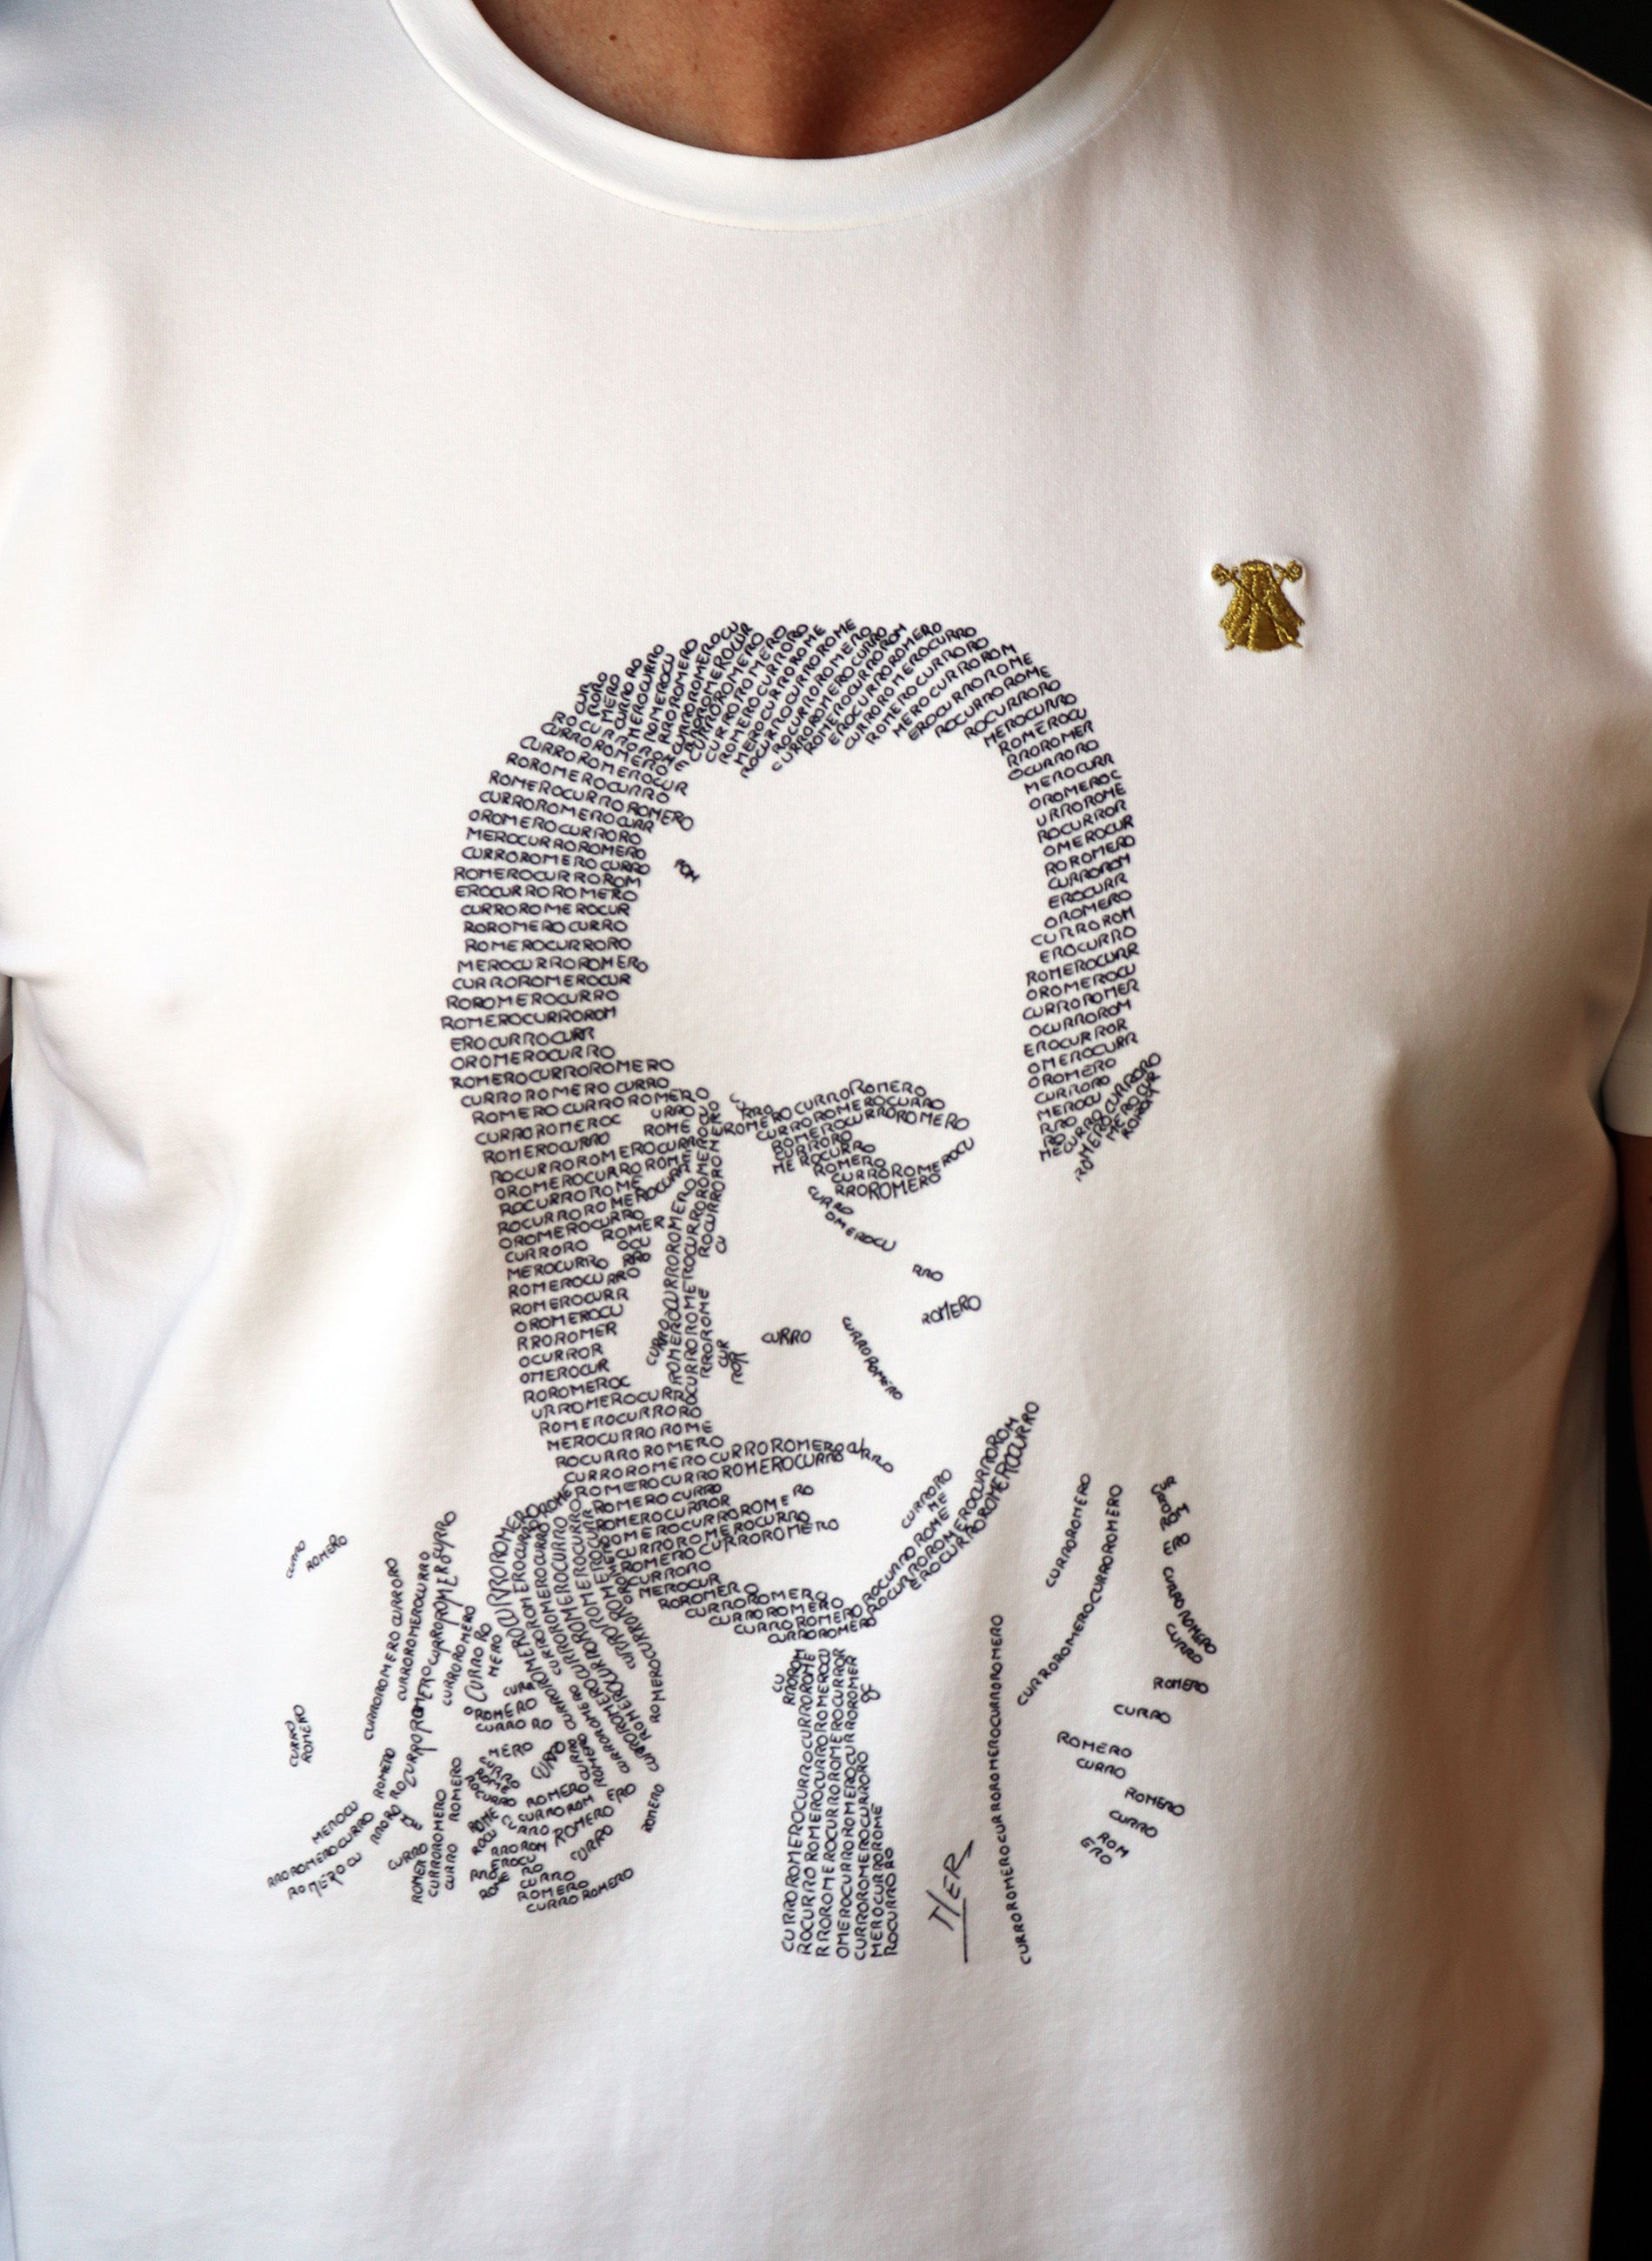 Tribute-T-Shirt Curro Romero